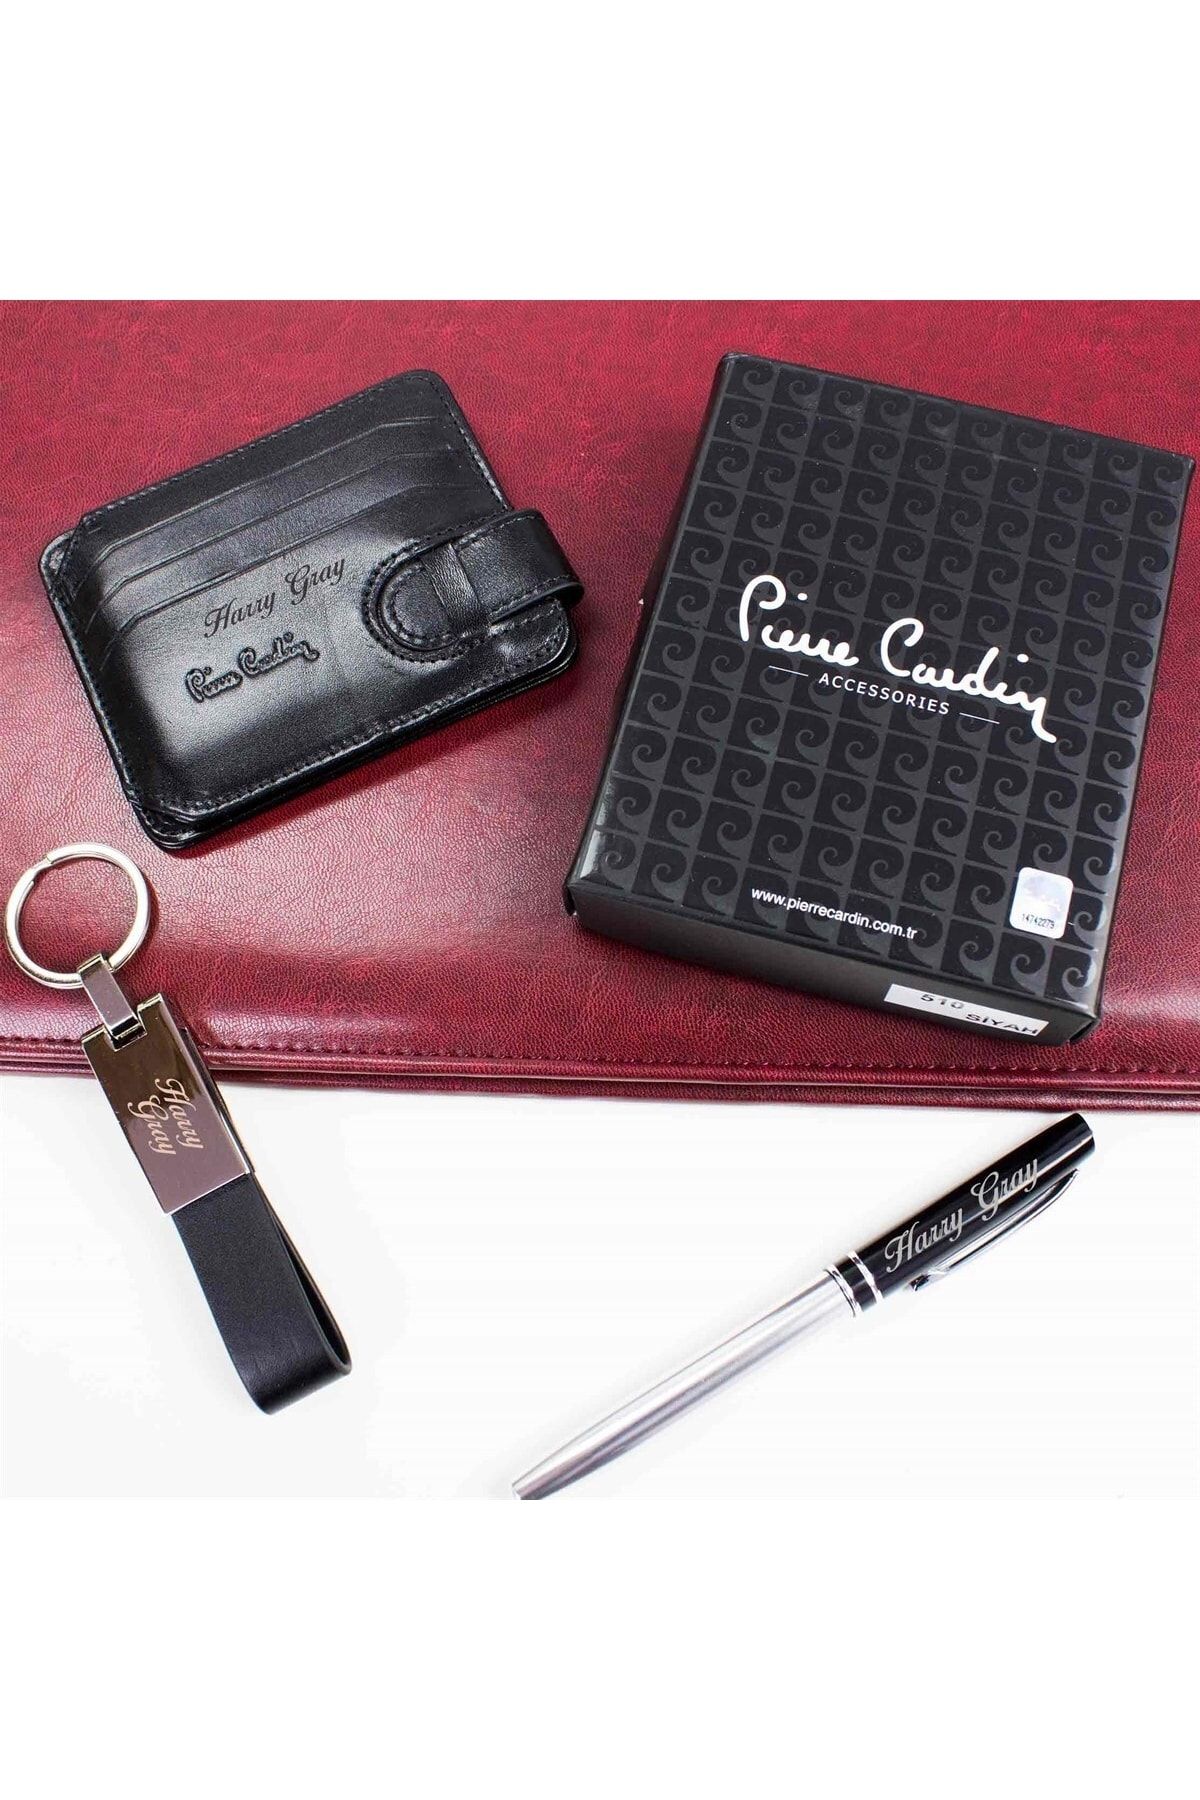 Pierre Cardin Isme Özel Deri Kartlık Cüzdan Kalem Ve Anahtarlık Seti P510